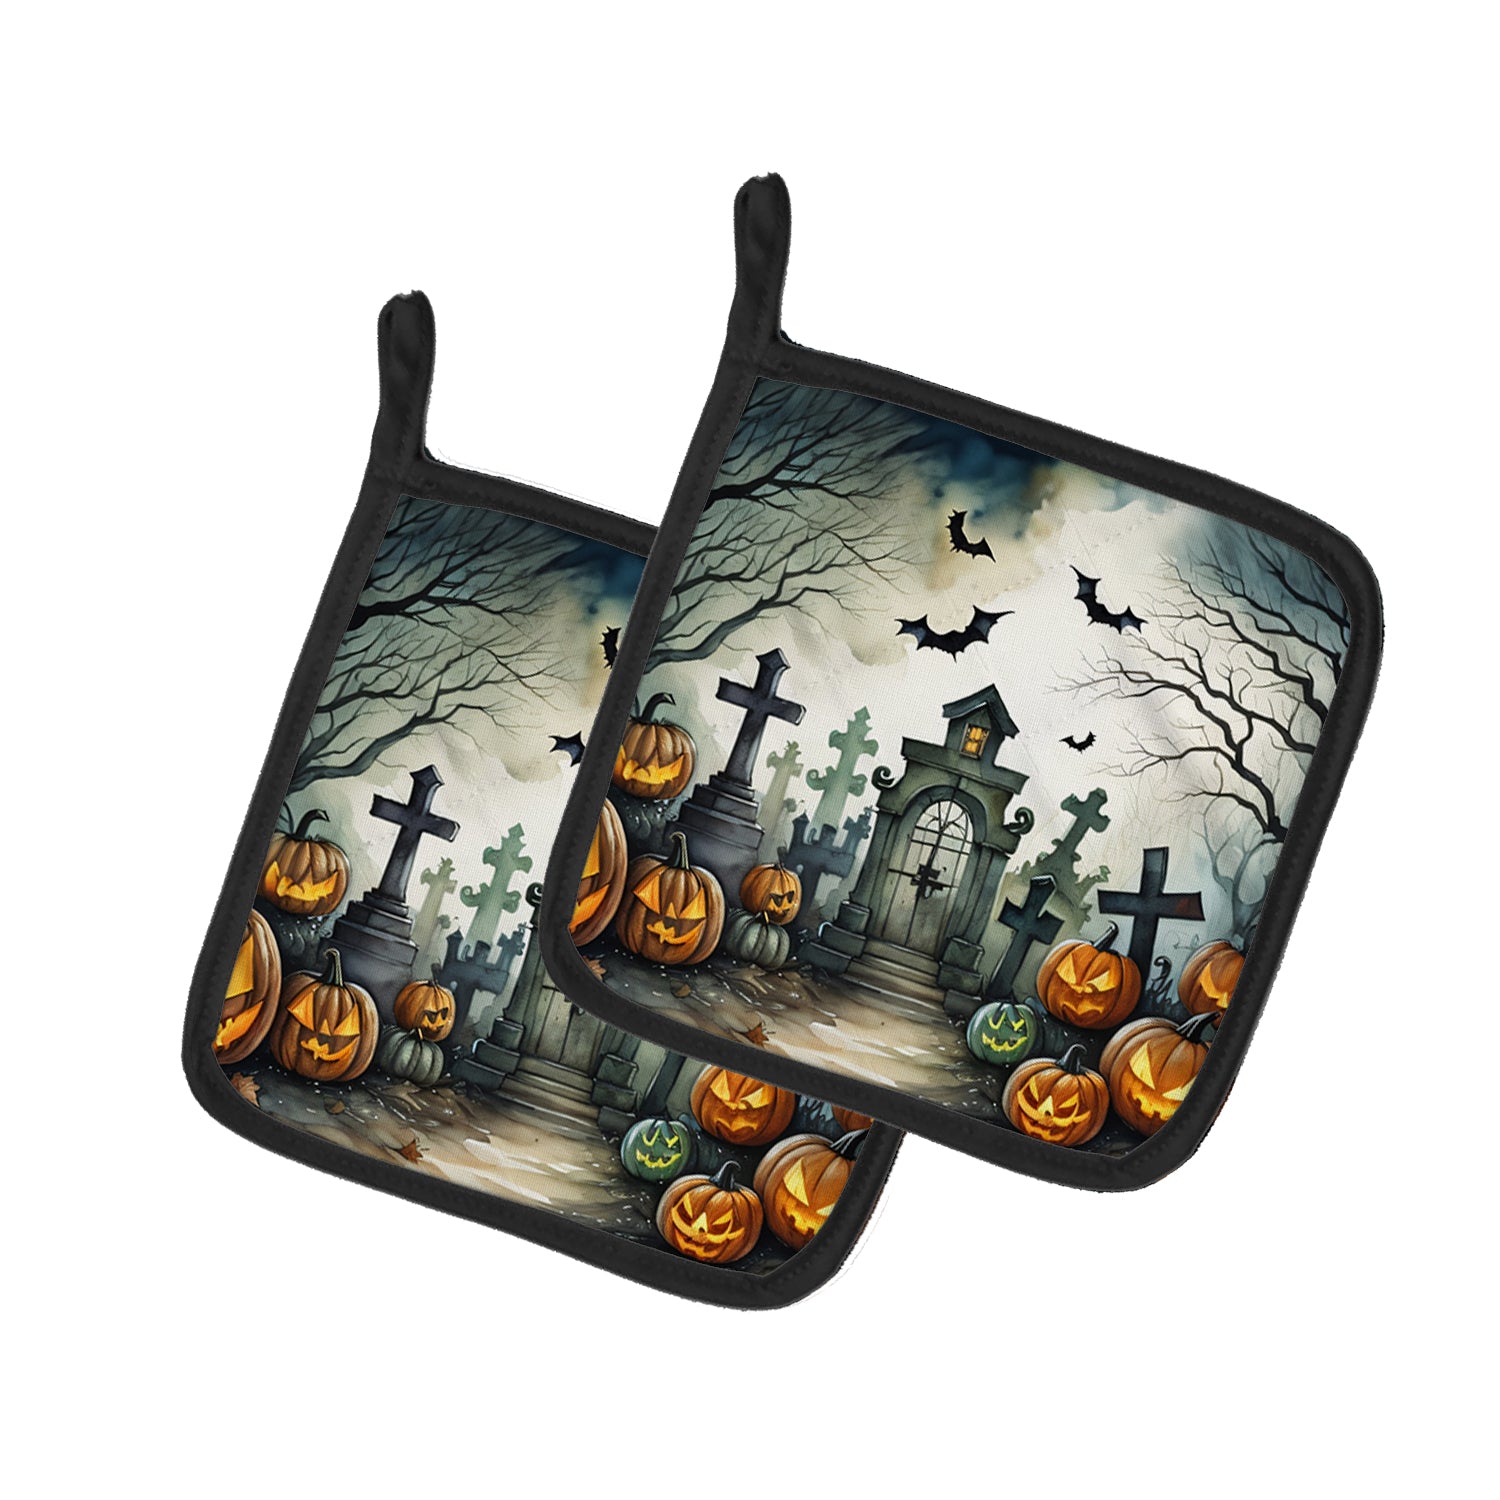 Buy this Graveyard Spooky Halloween Pair of Pot Holders